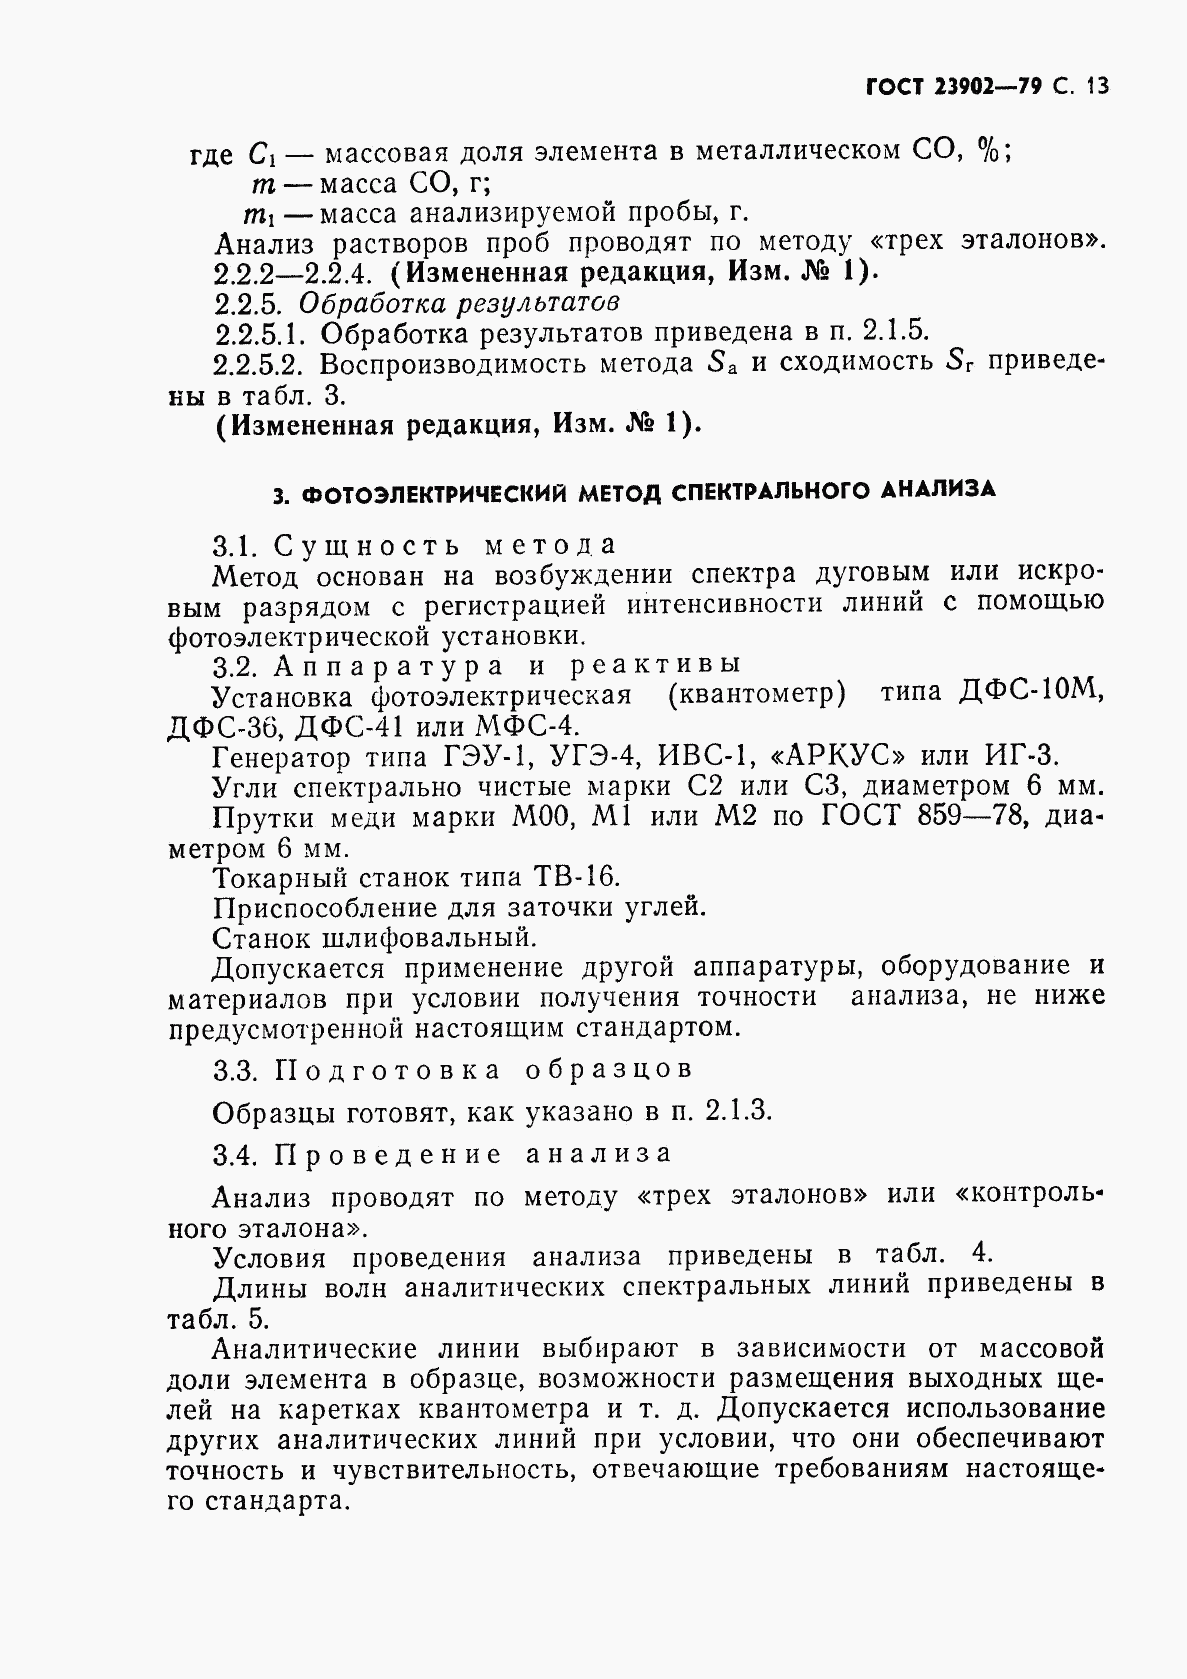 ГОСТ 23902-79, страница 14